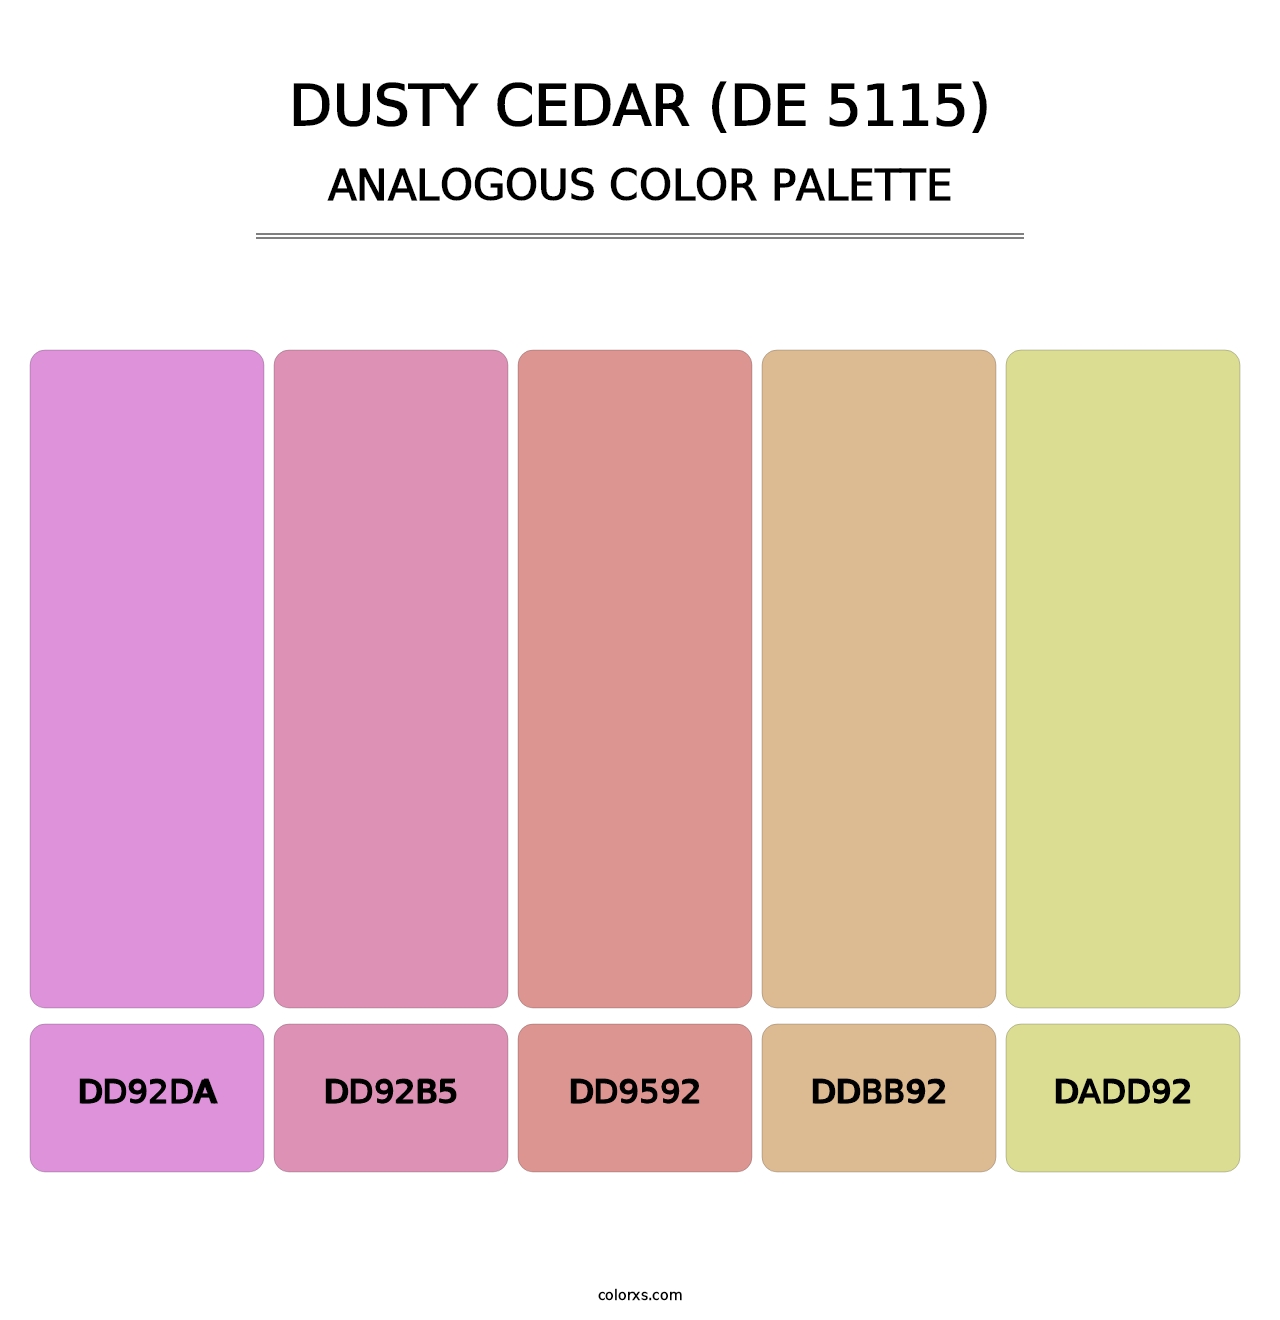 Dusty Cedar (DE 5115) - Analogous Color Palette